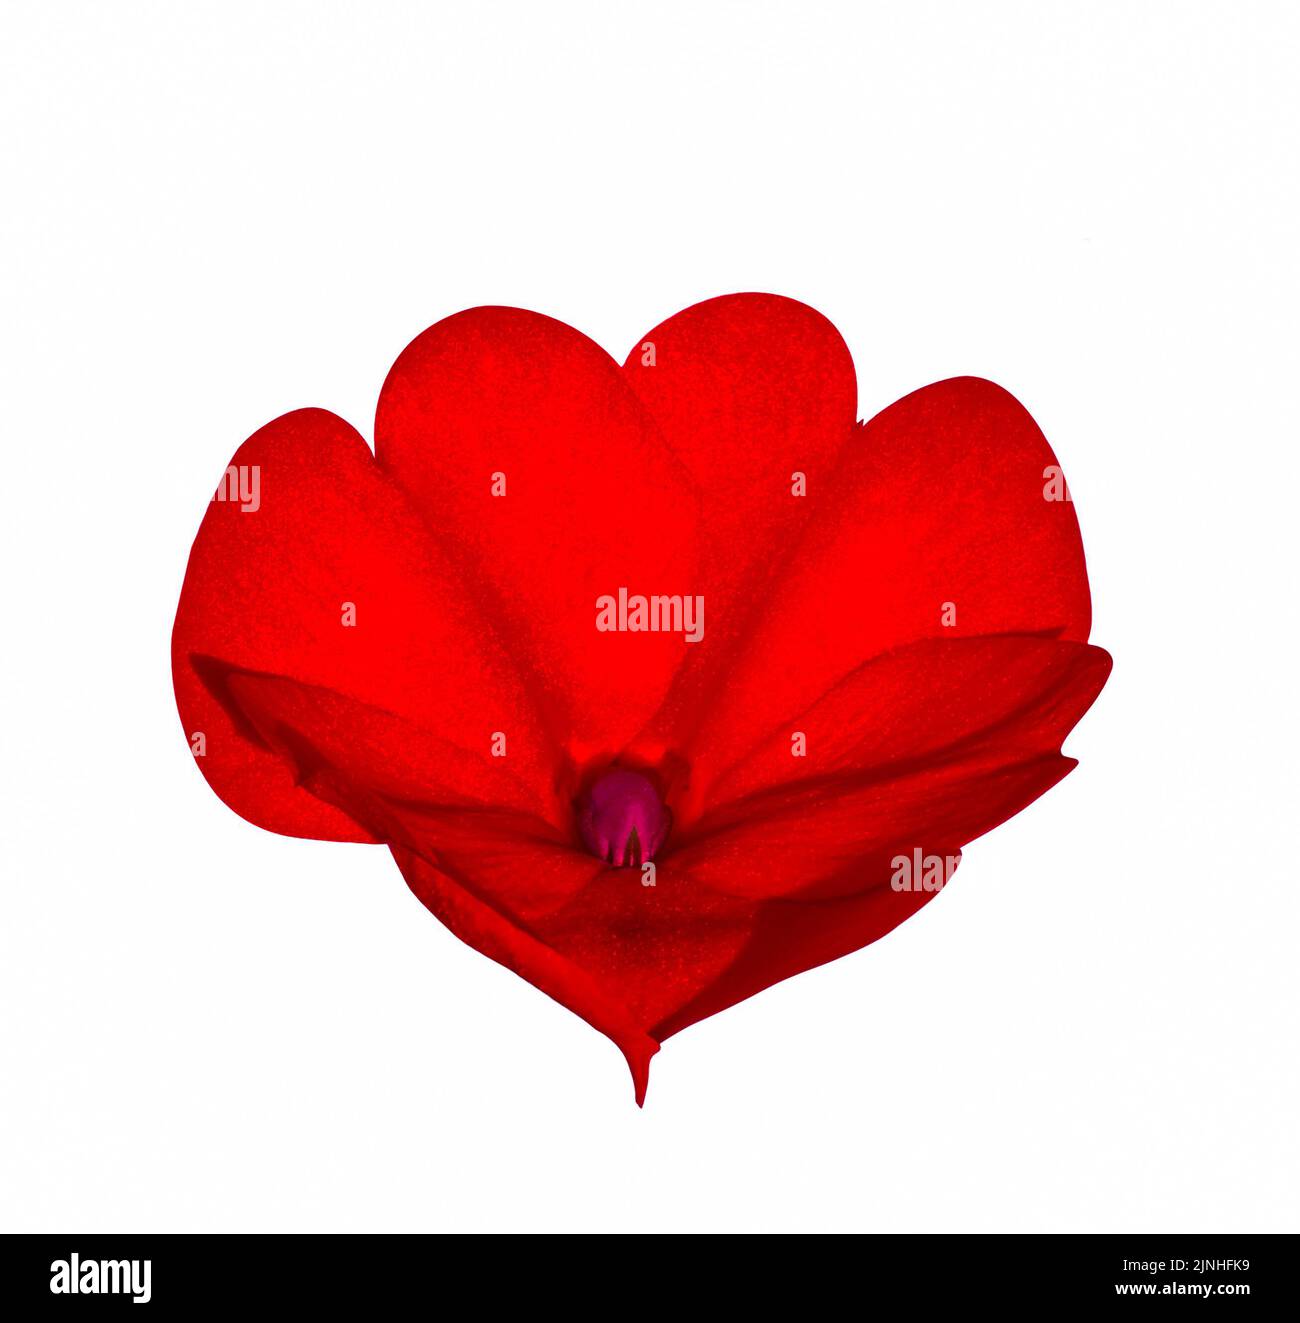 Dramatische rote Herz mit Satin-texturierten Blütenblättern abstrakten Ausschnitt isoliert auf weißem Hintergrund Stockfoto